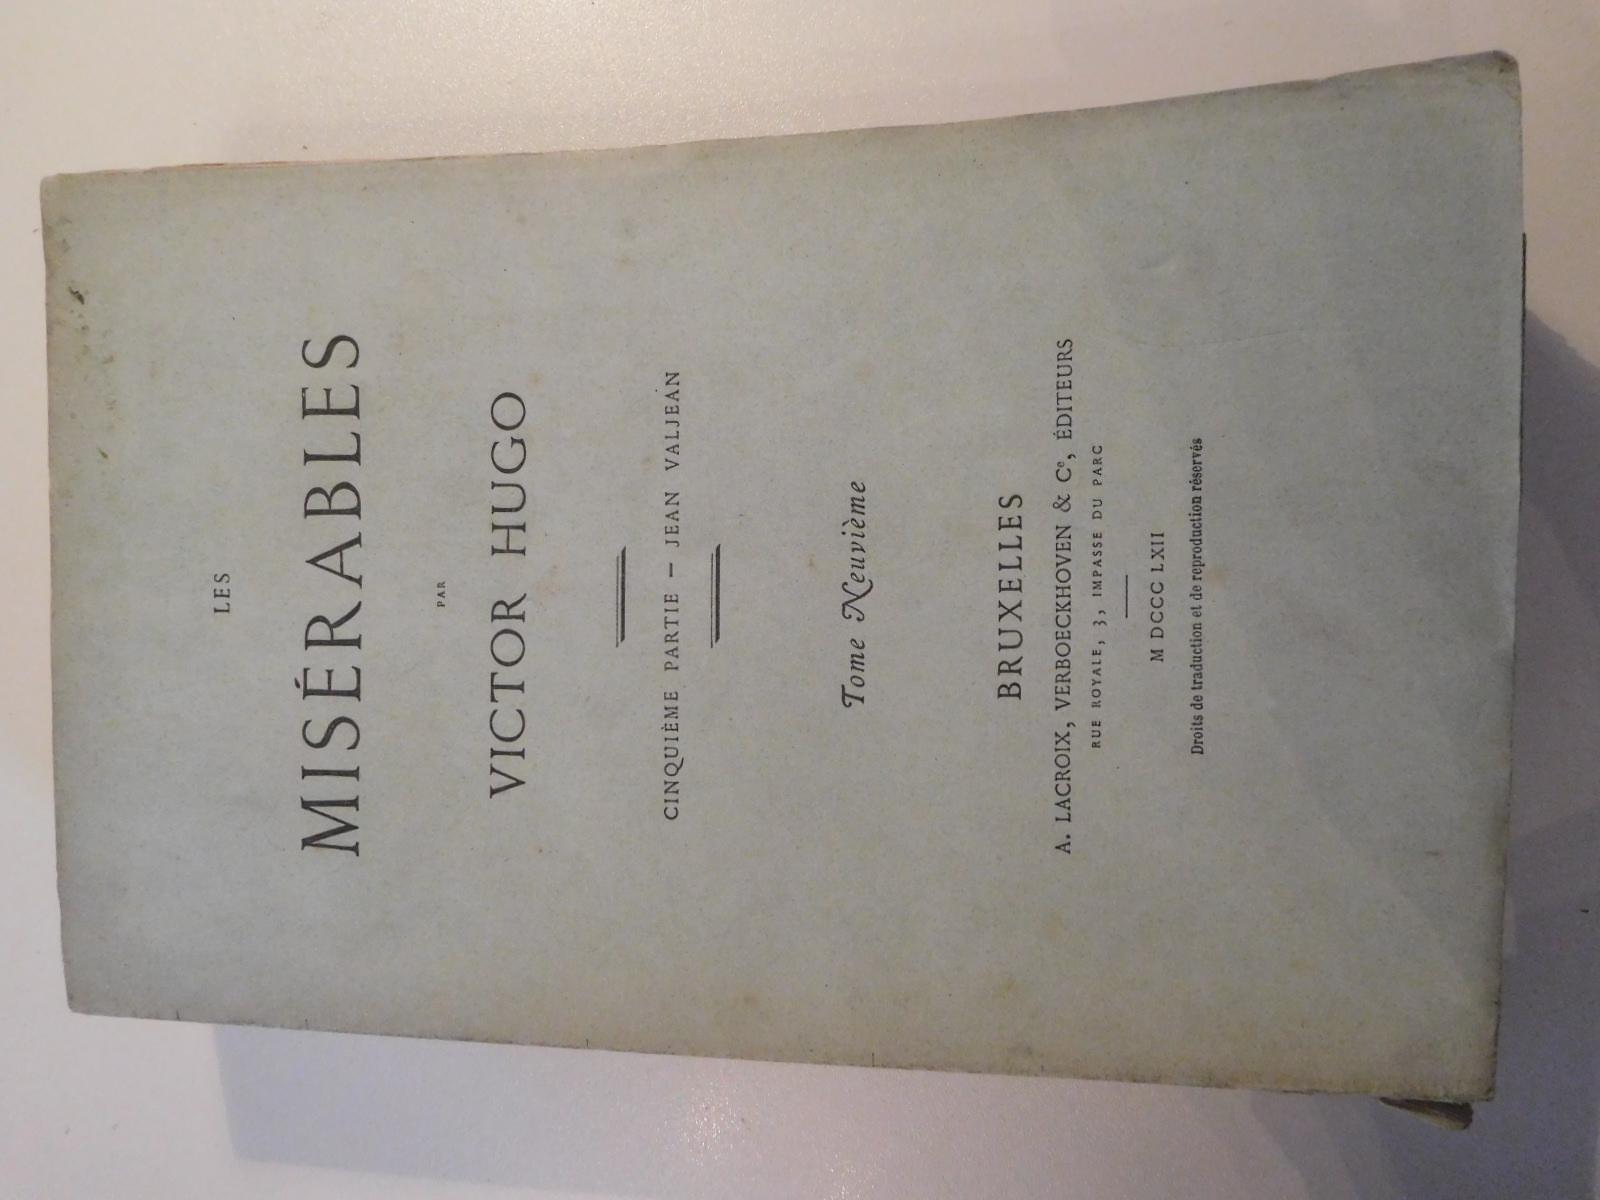 Victor Hugo: Les Misérables. Cinquième partie – Jean Valjean - Tome neuvième (French language, 1862)